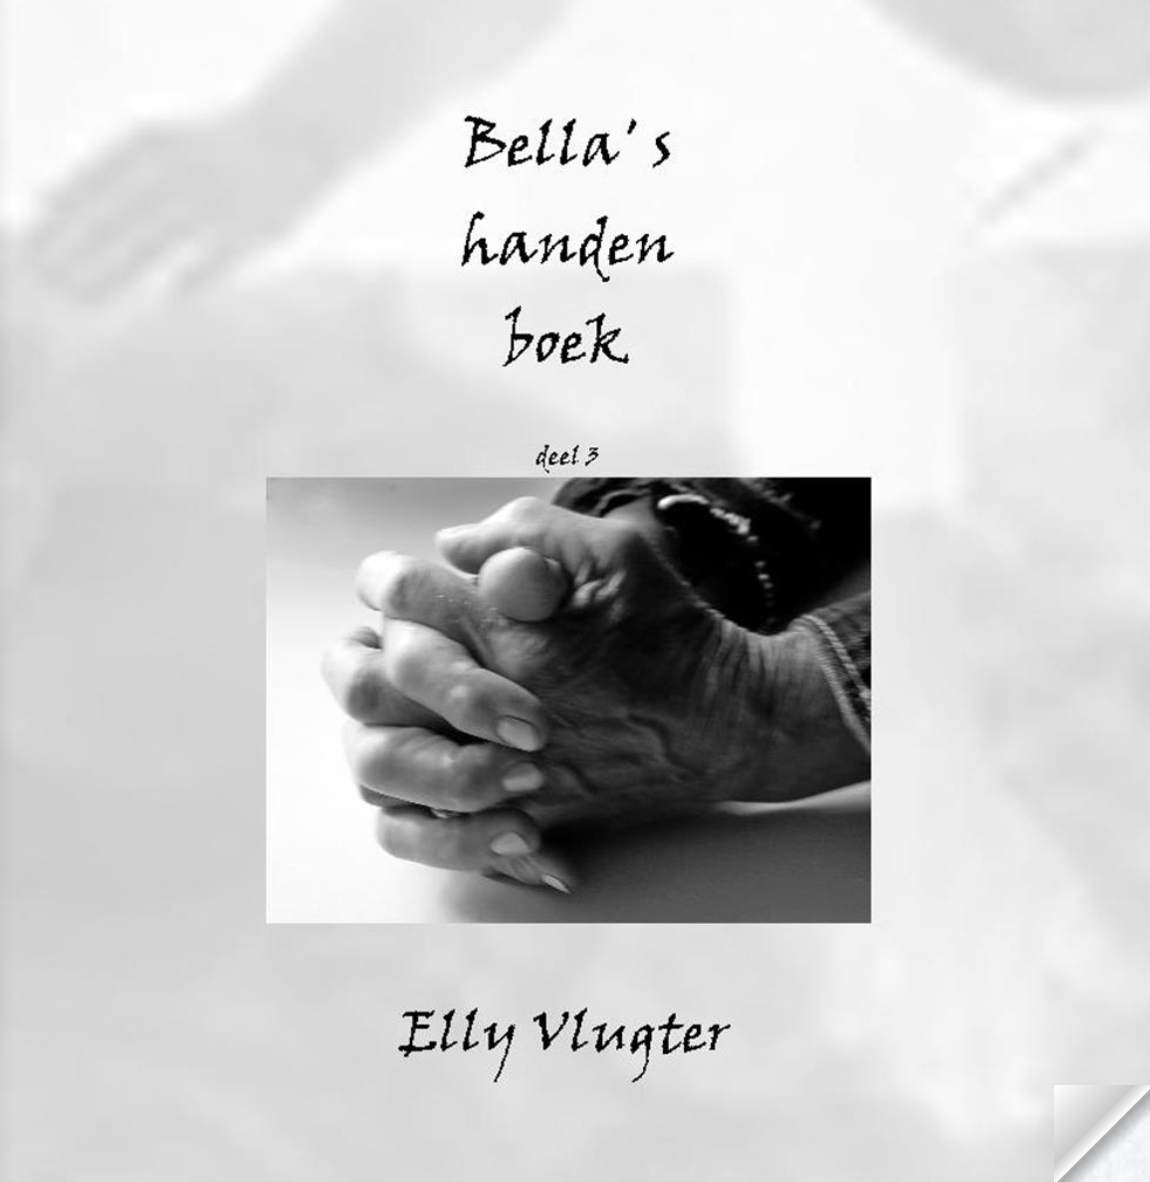 Bella’s handenboek, deel 3